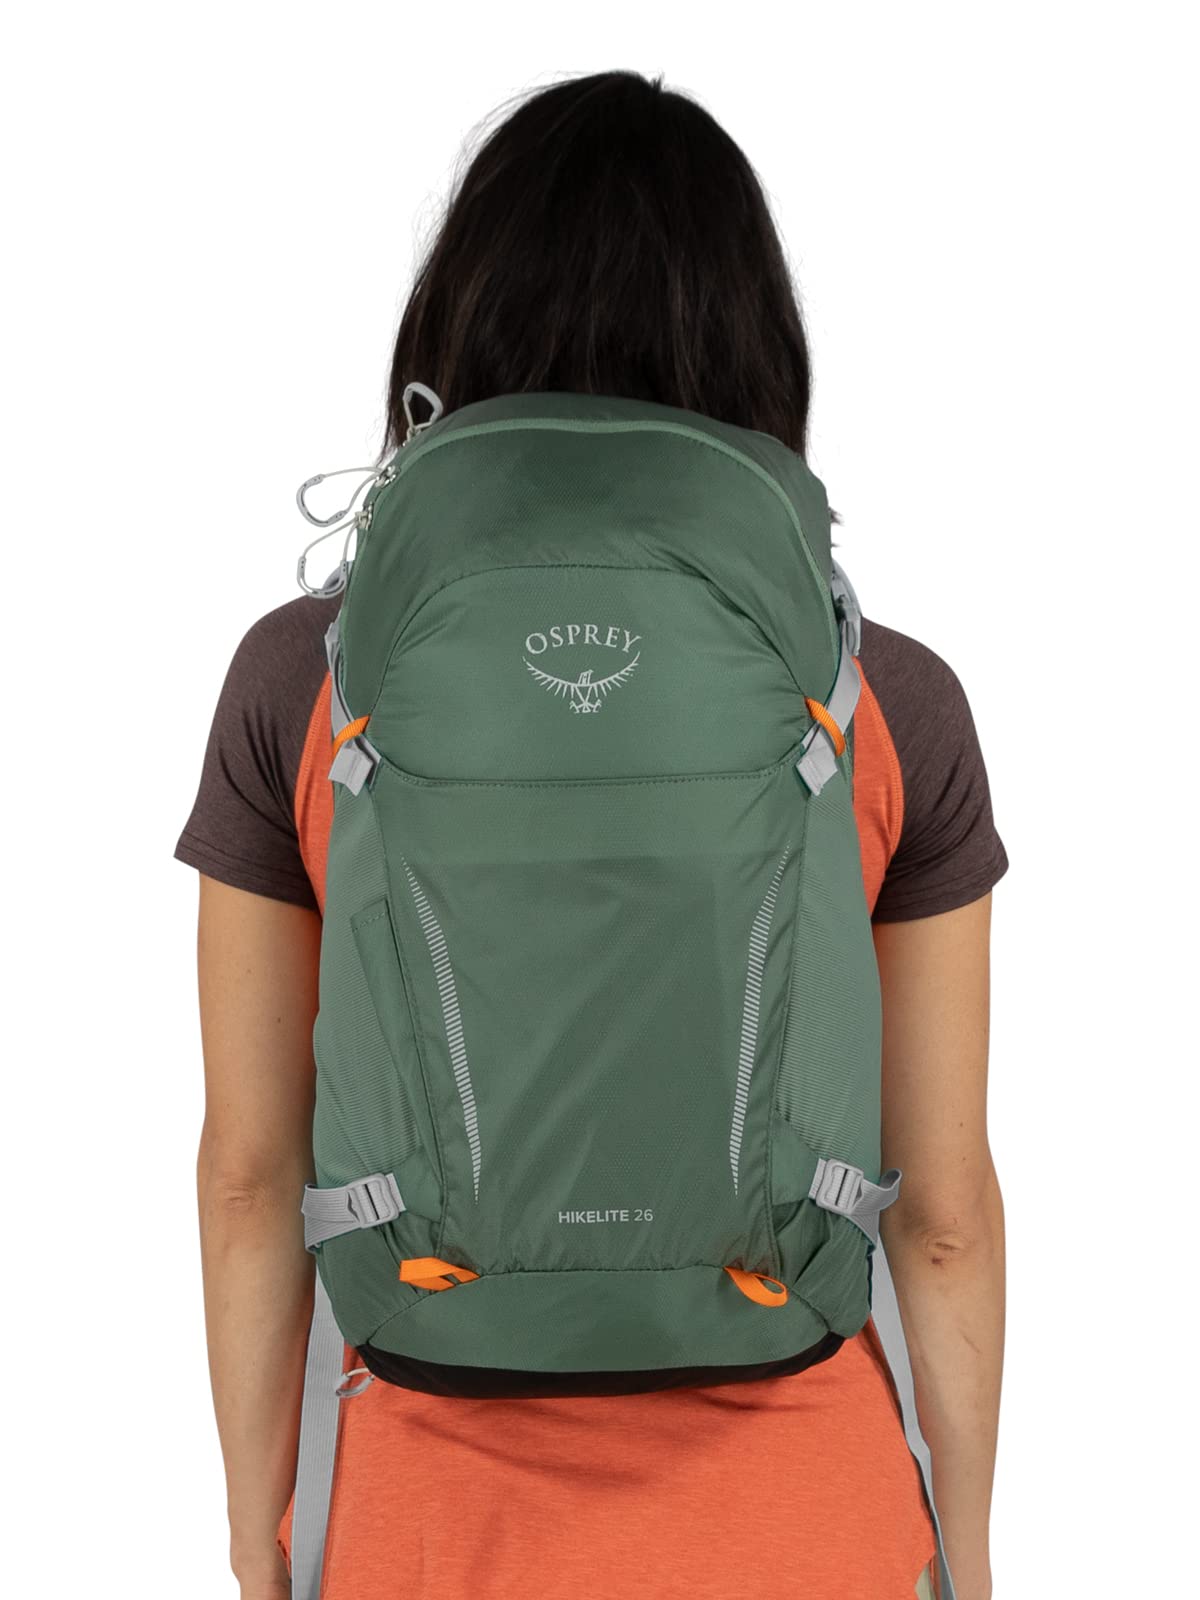 Osprey Hikelite 26L Hiking Backpack, Pine Leaf Green, O/S